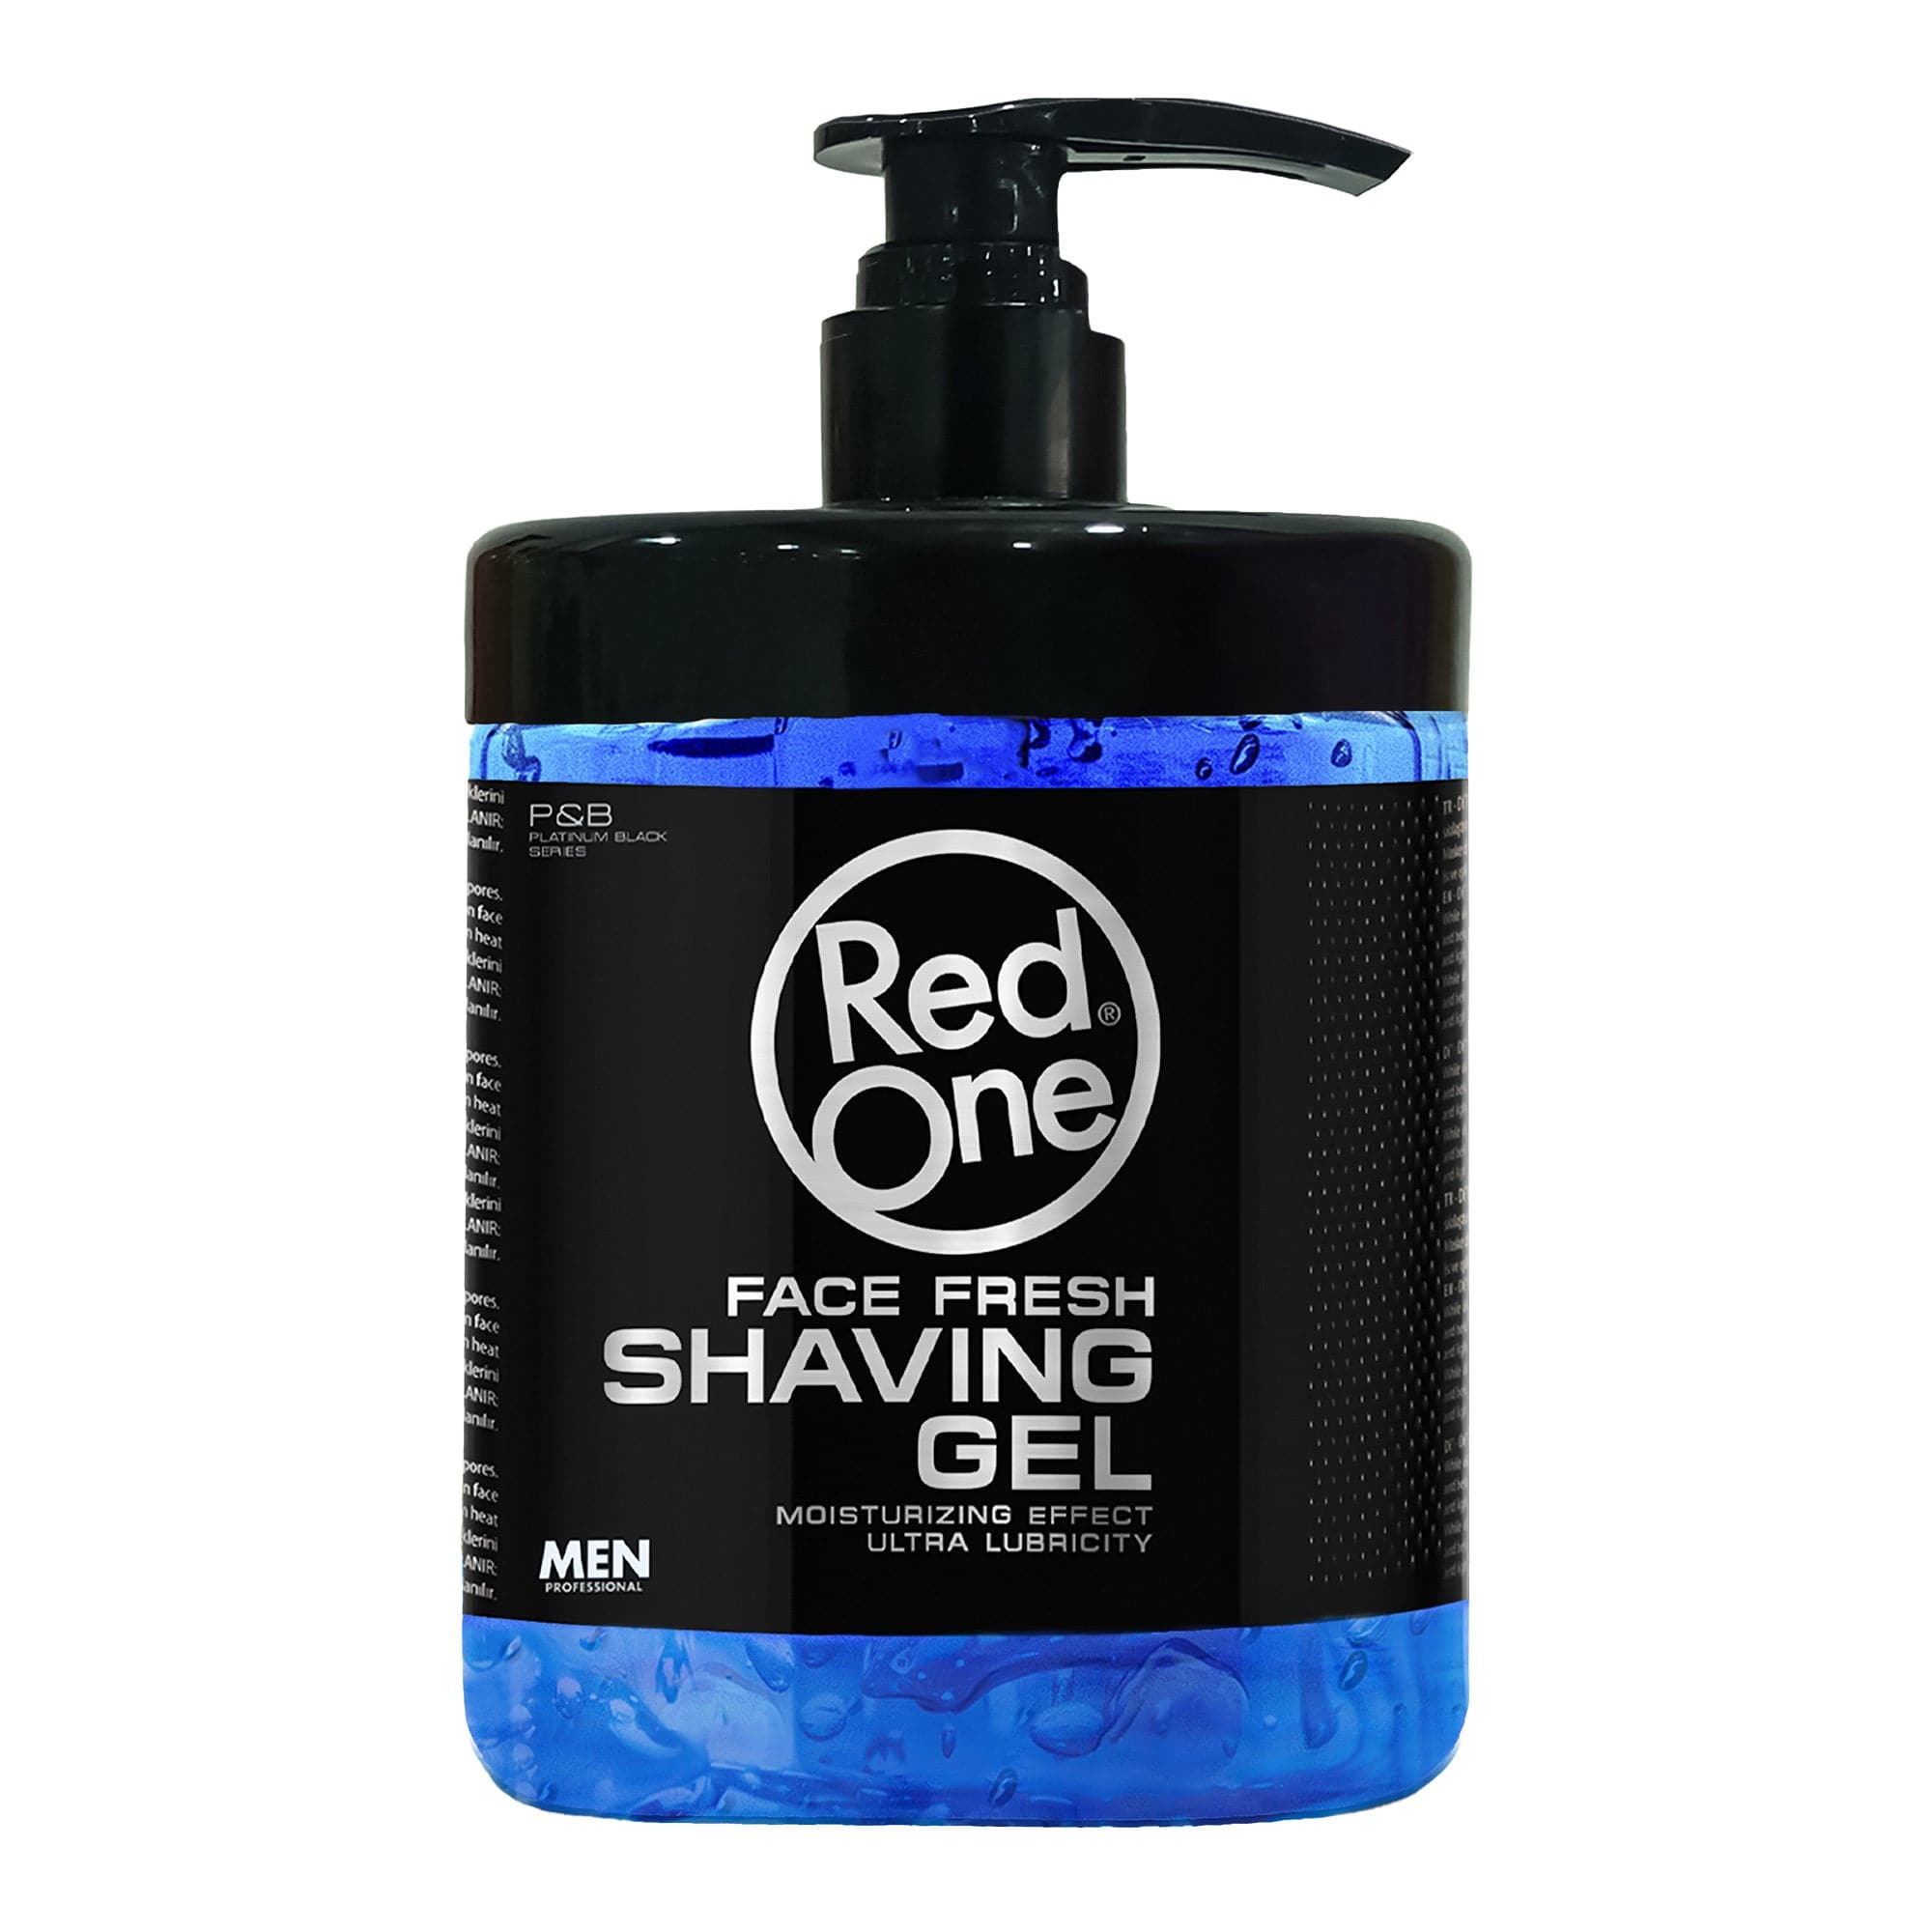 Redone - Shaving Gel Face Fresh Moisturizing Effect 1000ml